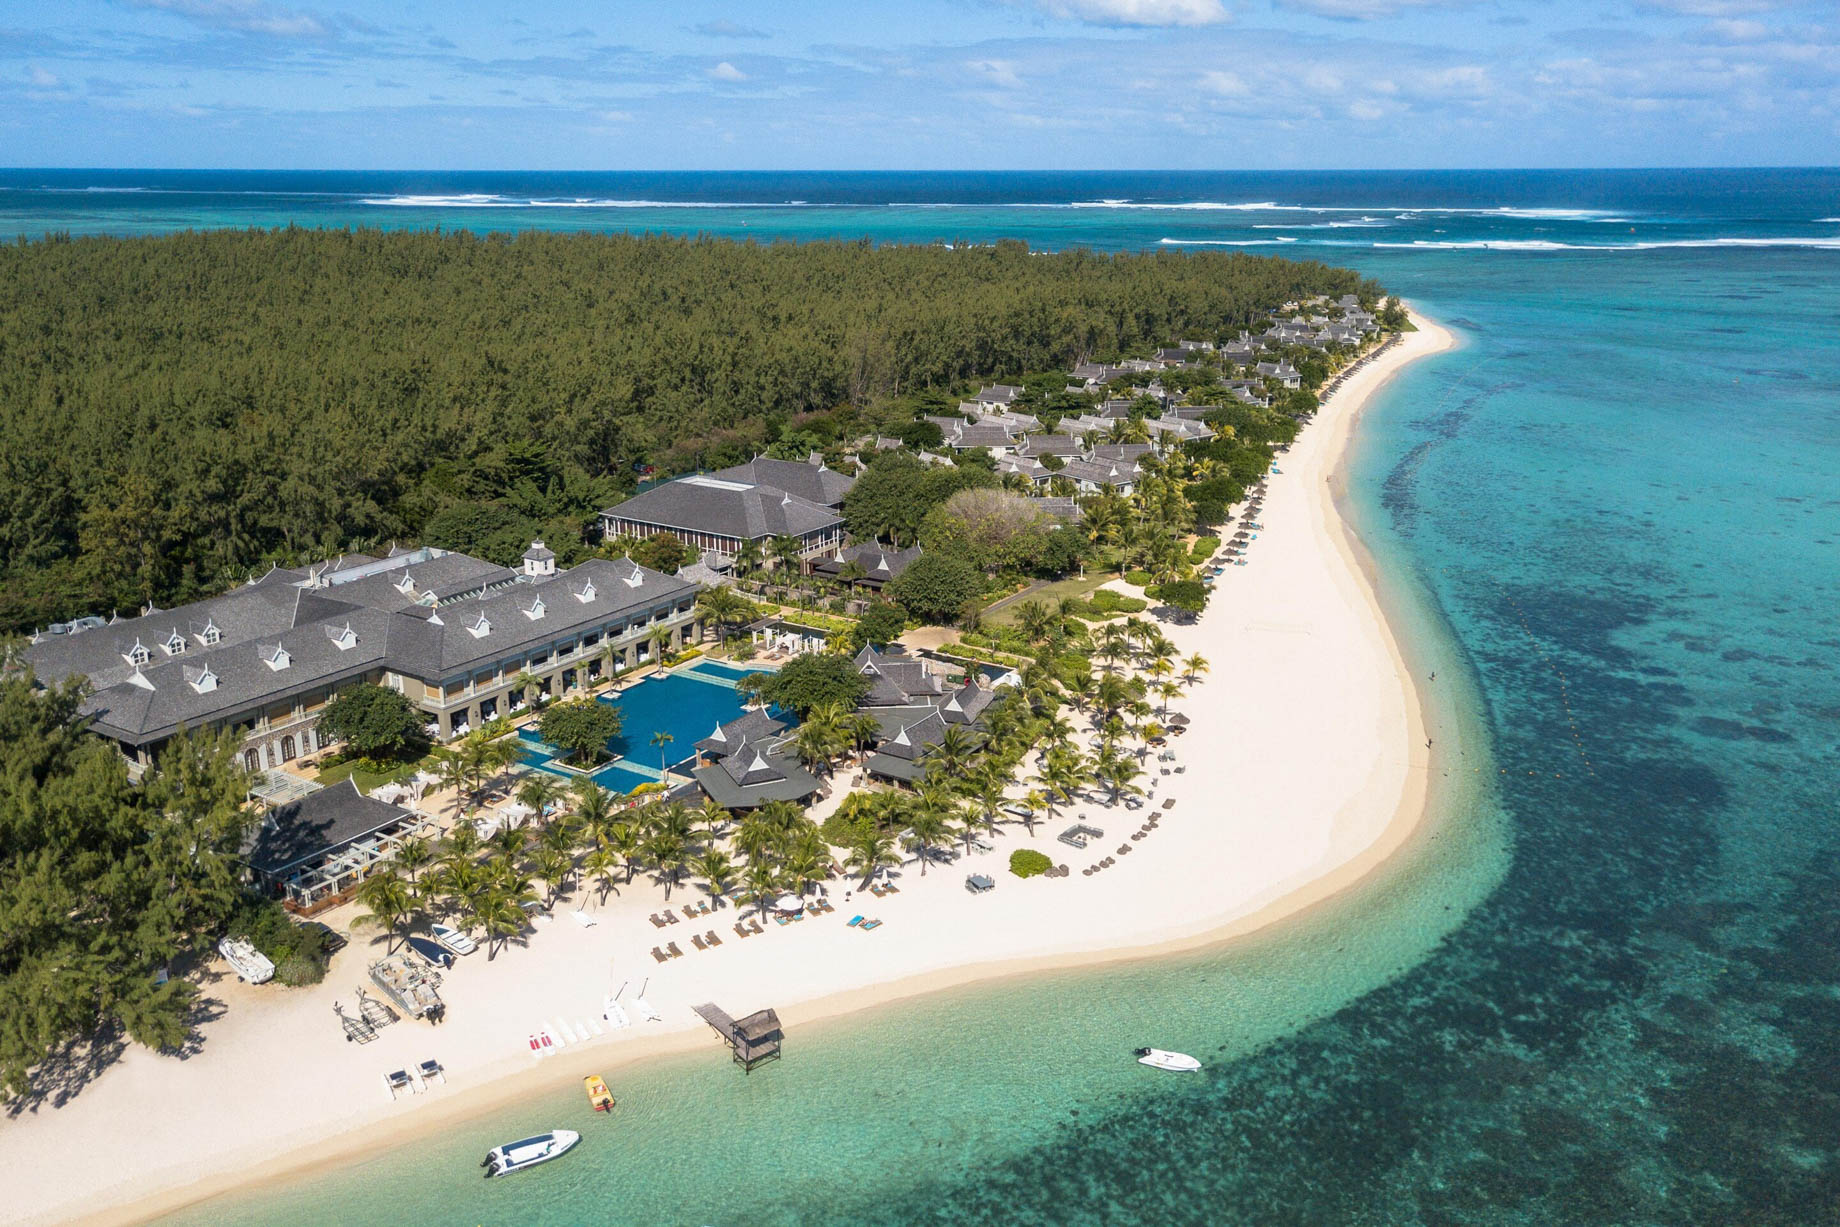 The St. Regis Mauritius Resort - Mauritius